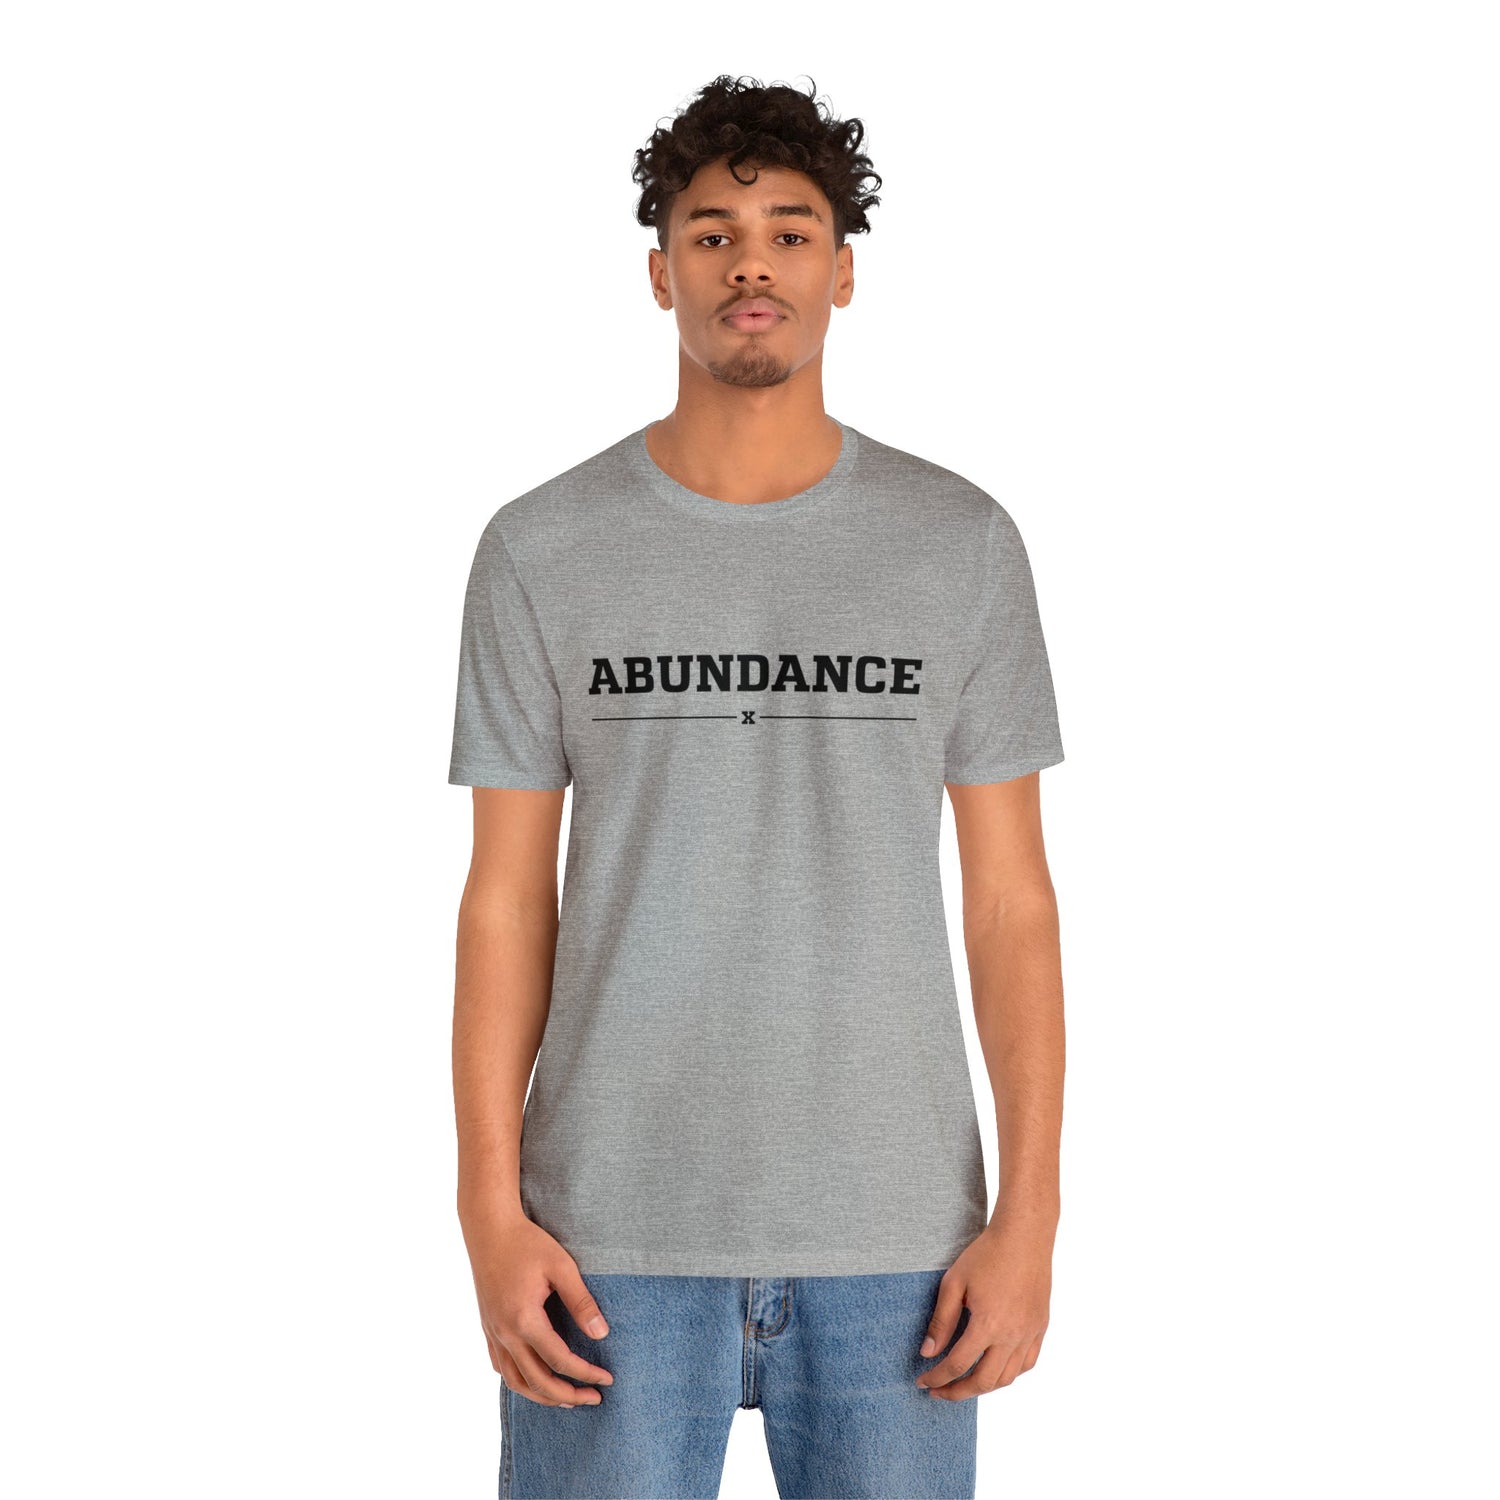 Abundance Tee